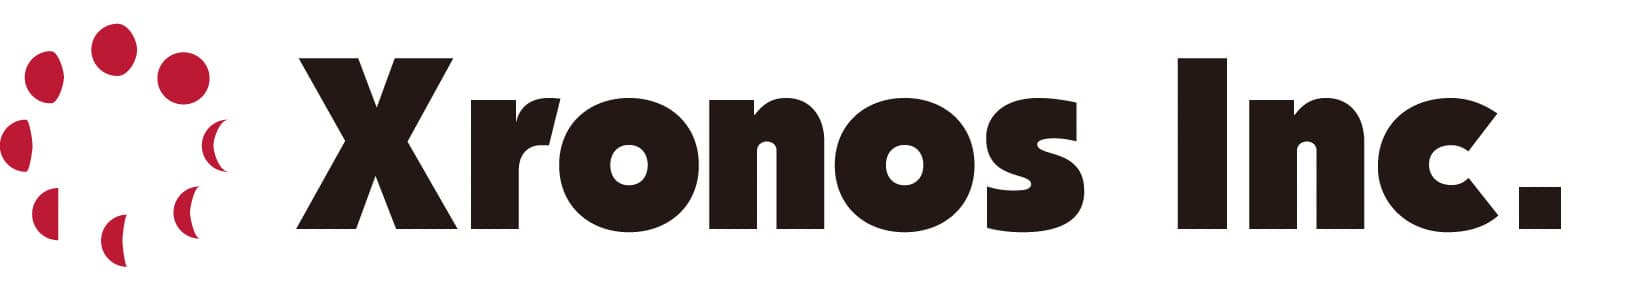 クロノス株式会社ロゴマーク